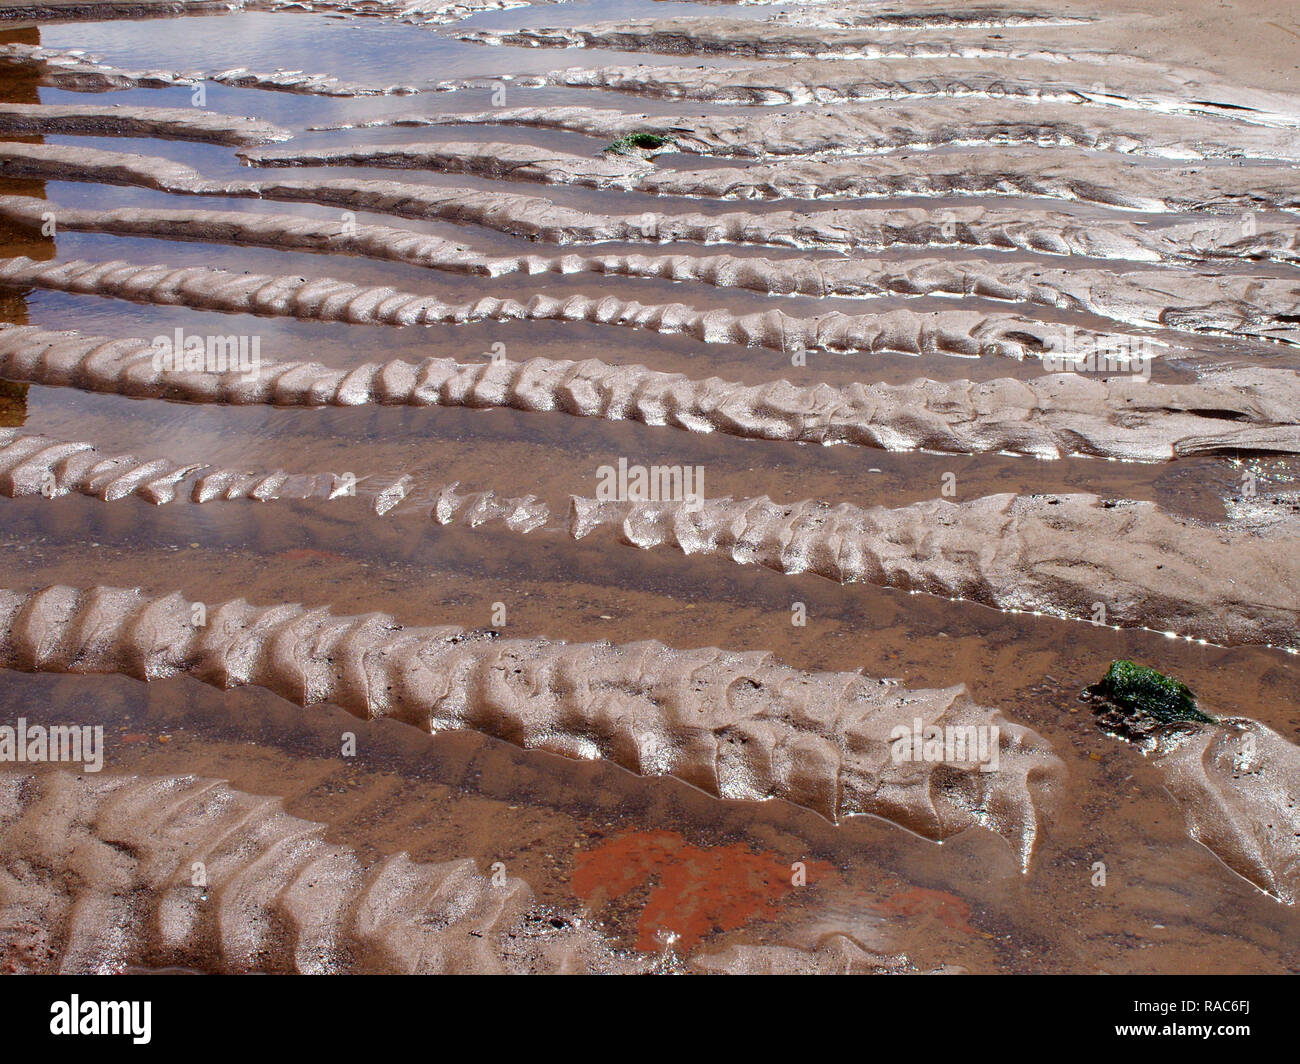 Seltsame sand Formen bei niedrigen Wasser auf Exmouths' Strand in Devon, England Großbritannien sehen diese wie einige spinalen Formen aus vorgeschichtlicher Zeit gefunden. Stockfoto